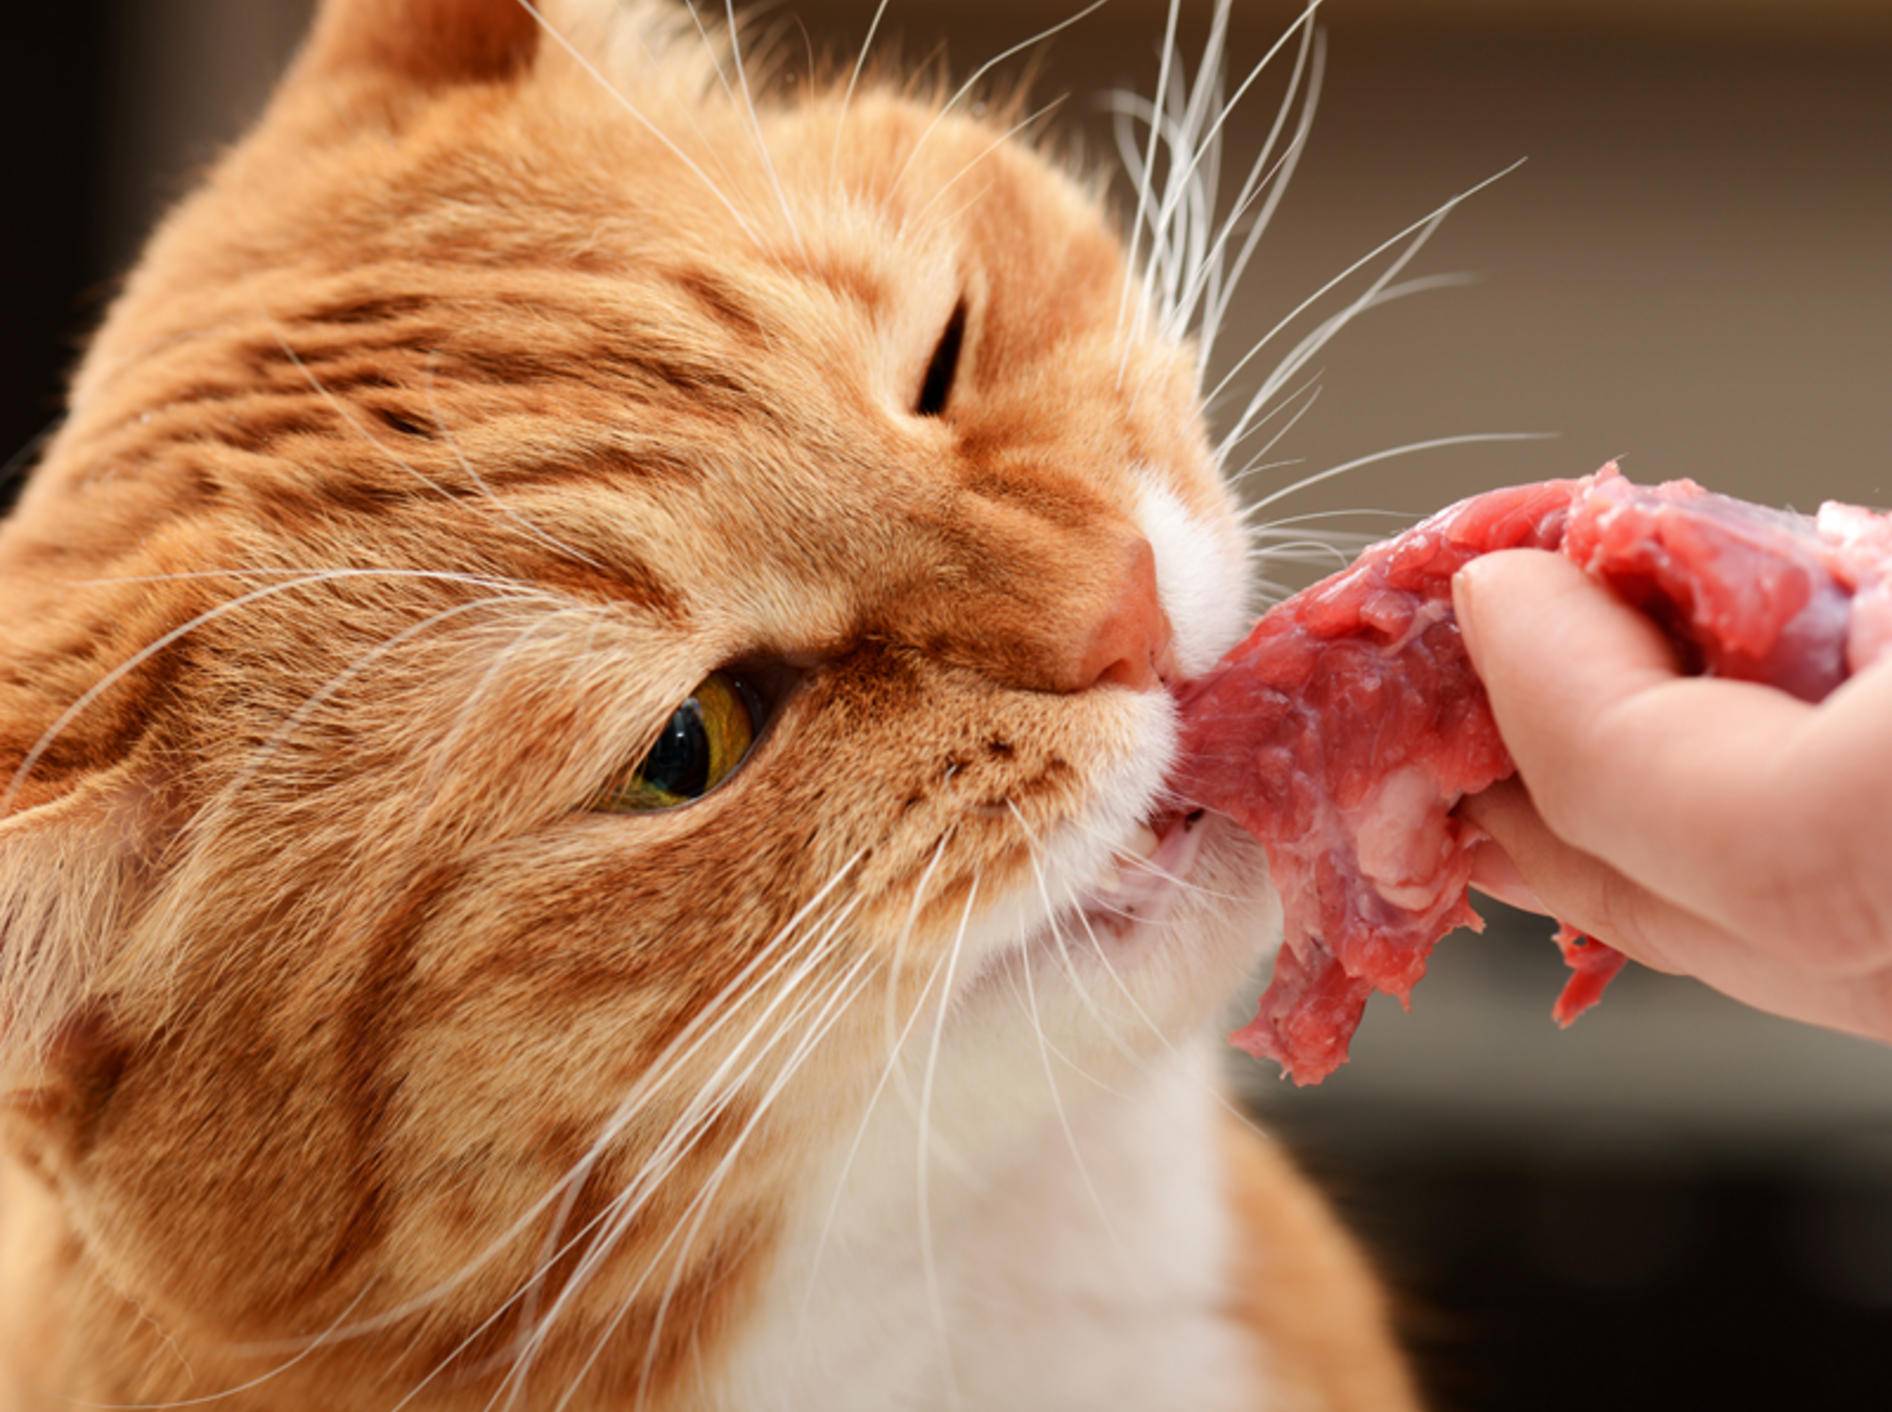 "Mmmh, lecker! Frisches, rohes Fleisch", denkt sich diese hungrige Katze – Bild: Shutterstock / Master L.